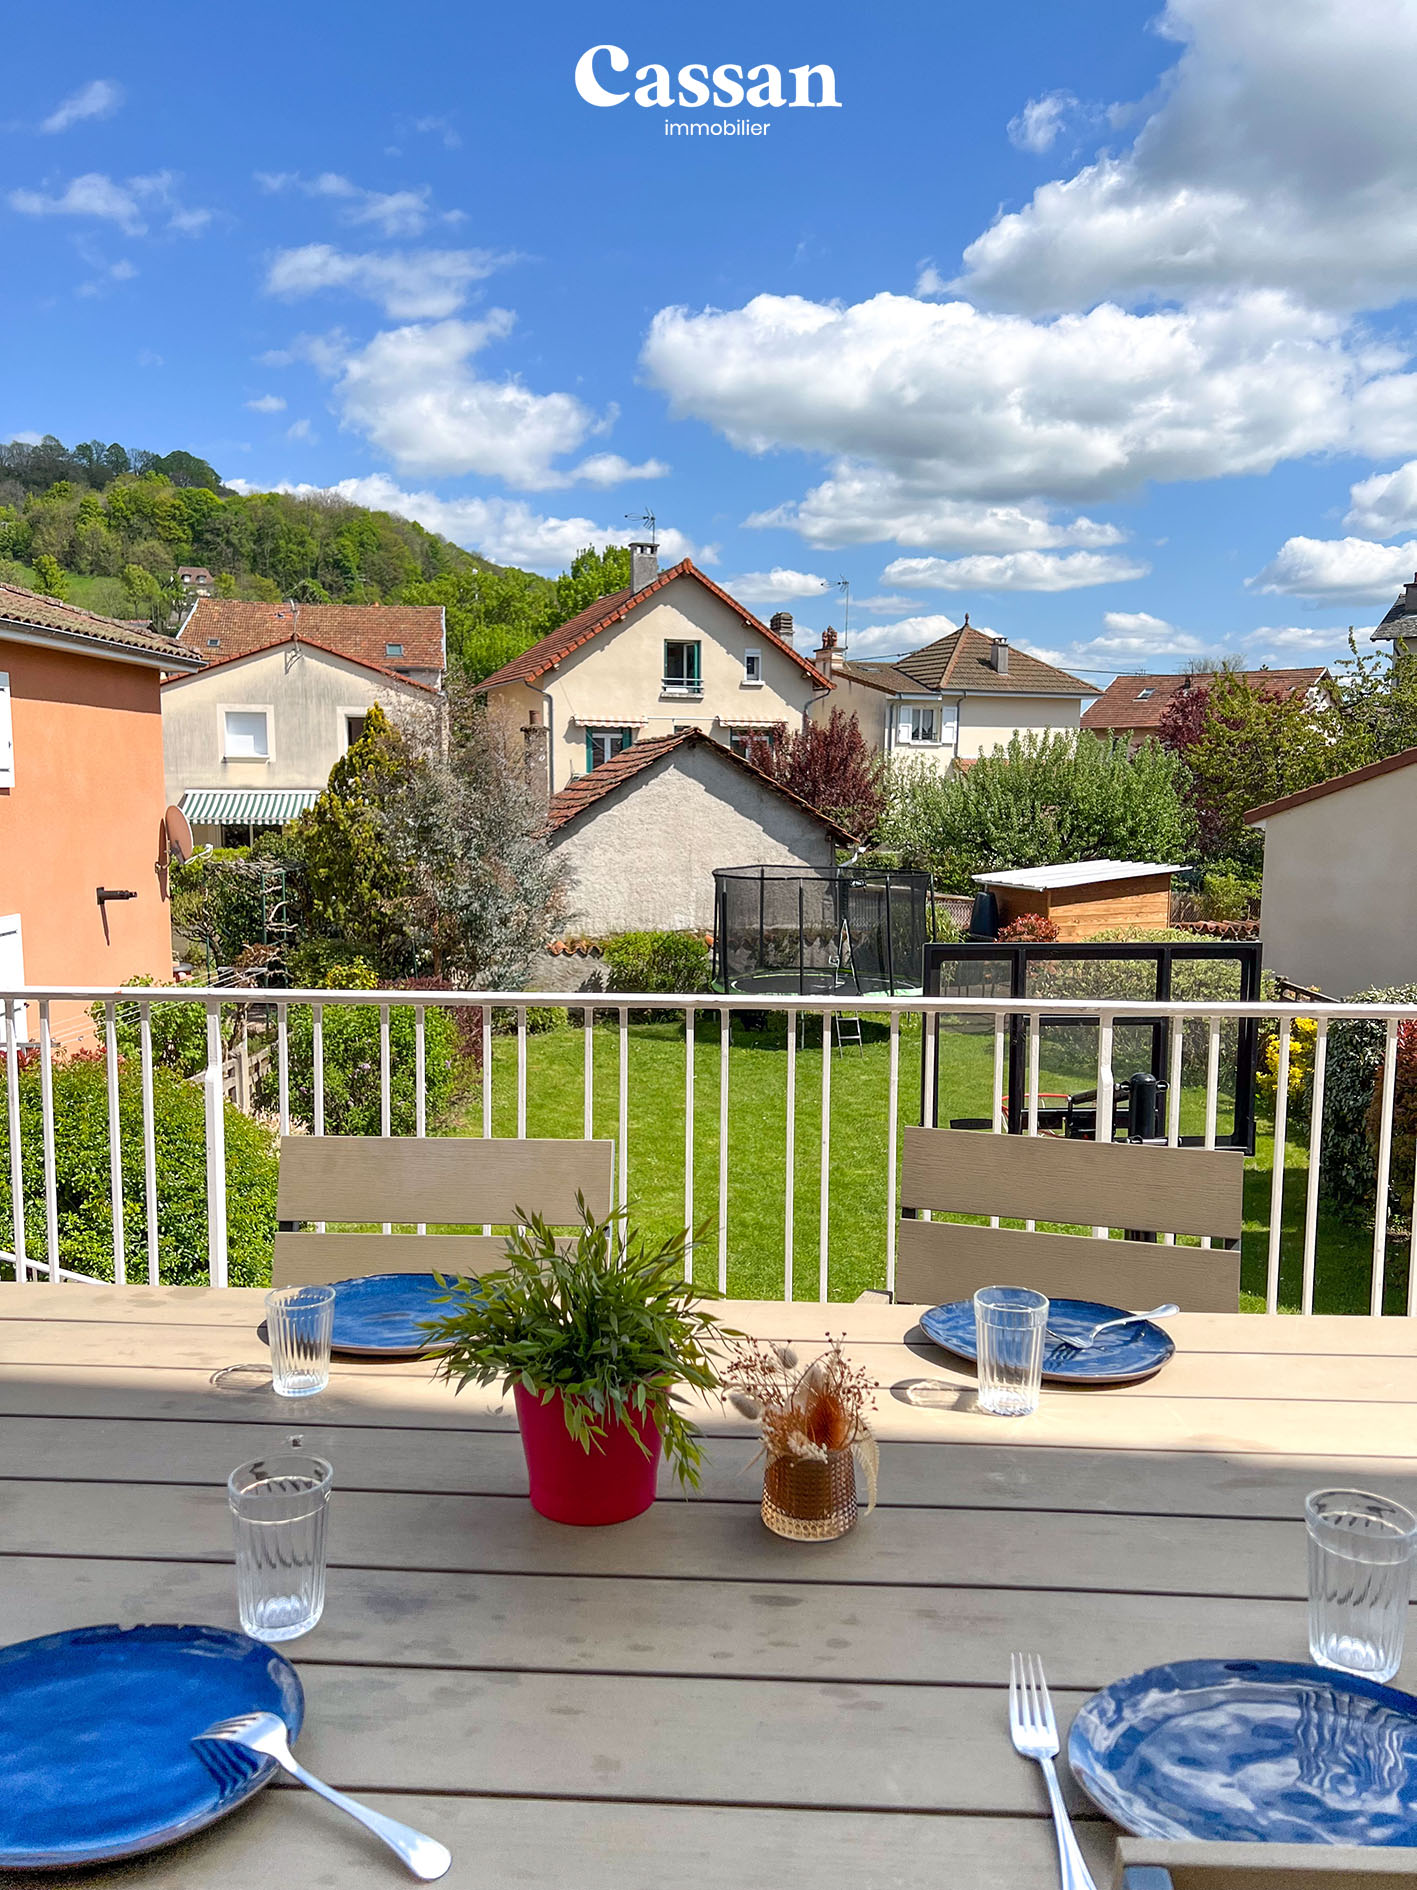 Terrasse vue maison à vendre Aurillac Cassan immobilier